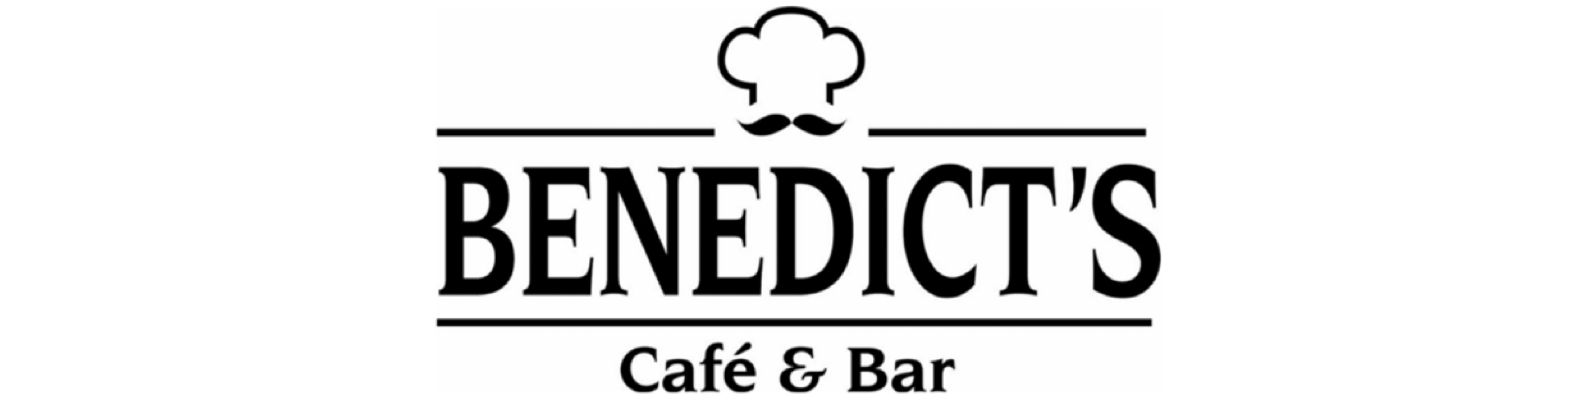 Benedict's Cafe & Bar